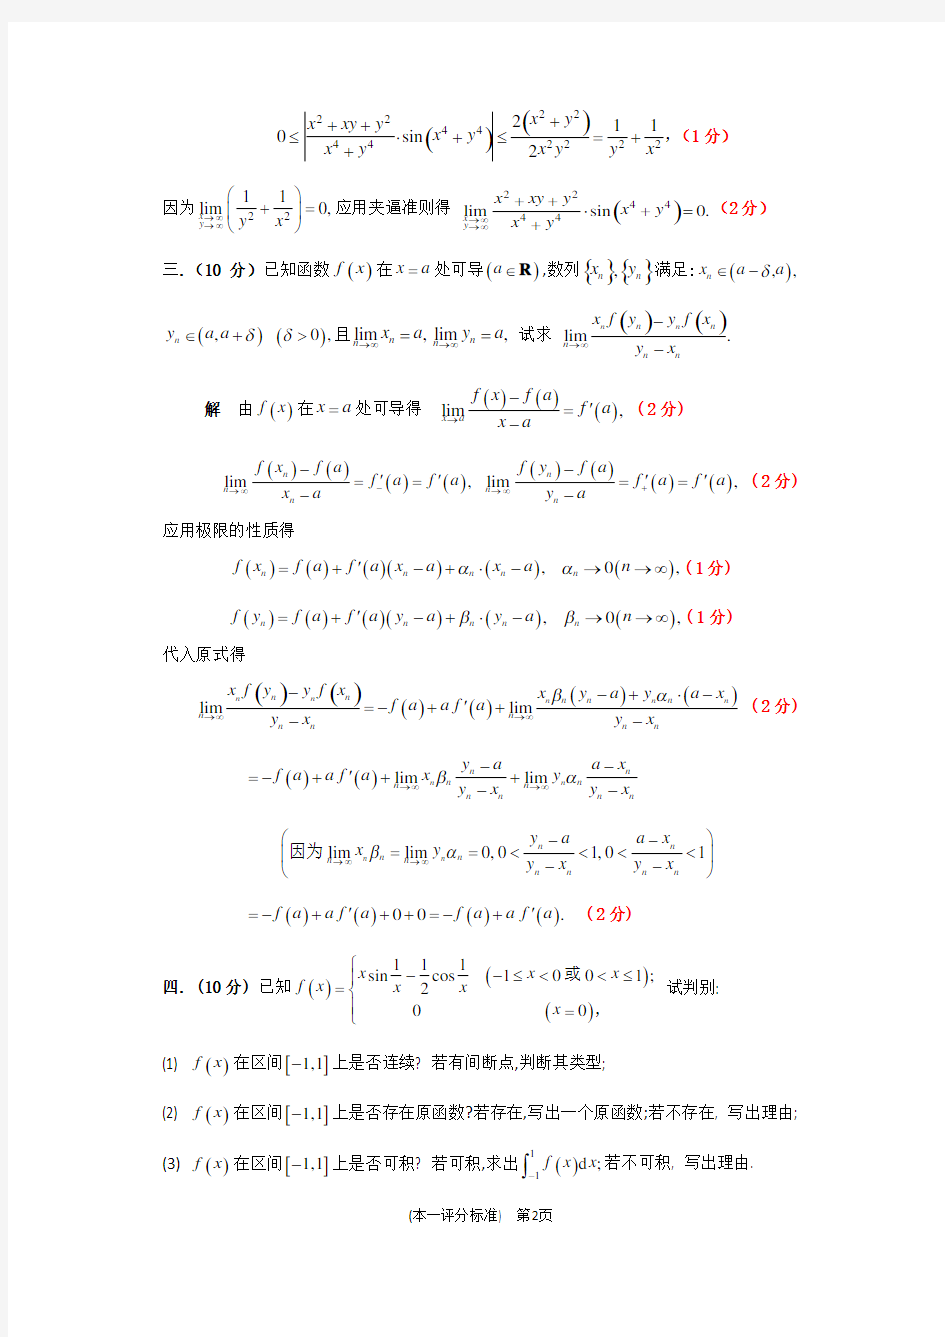 2018年江苏省高等数学竞赛本科一级试题与评分标准